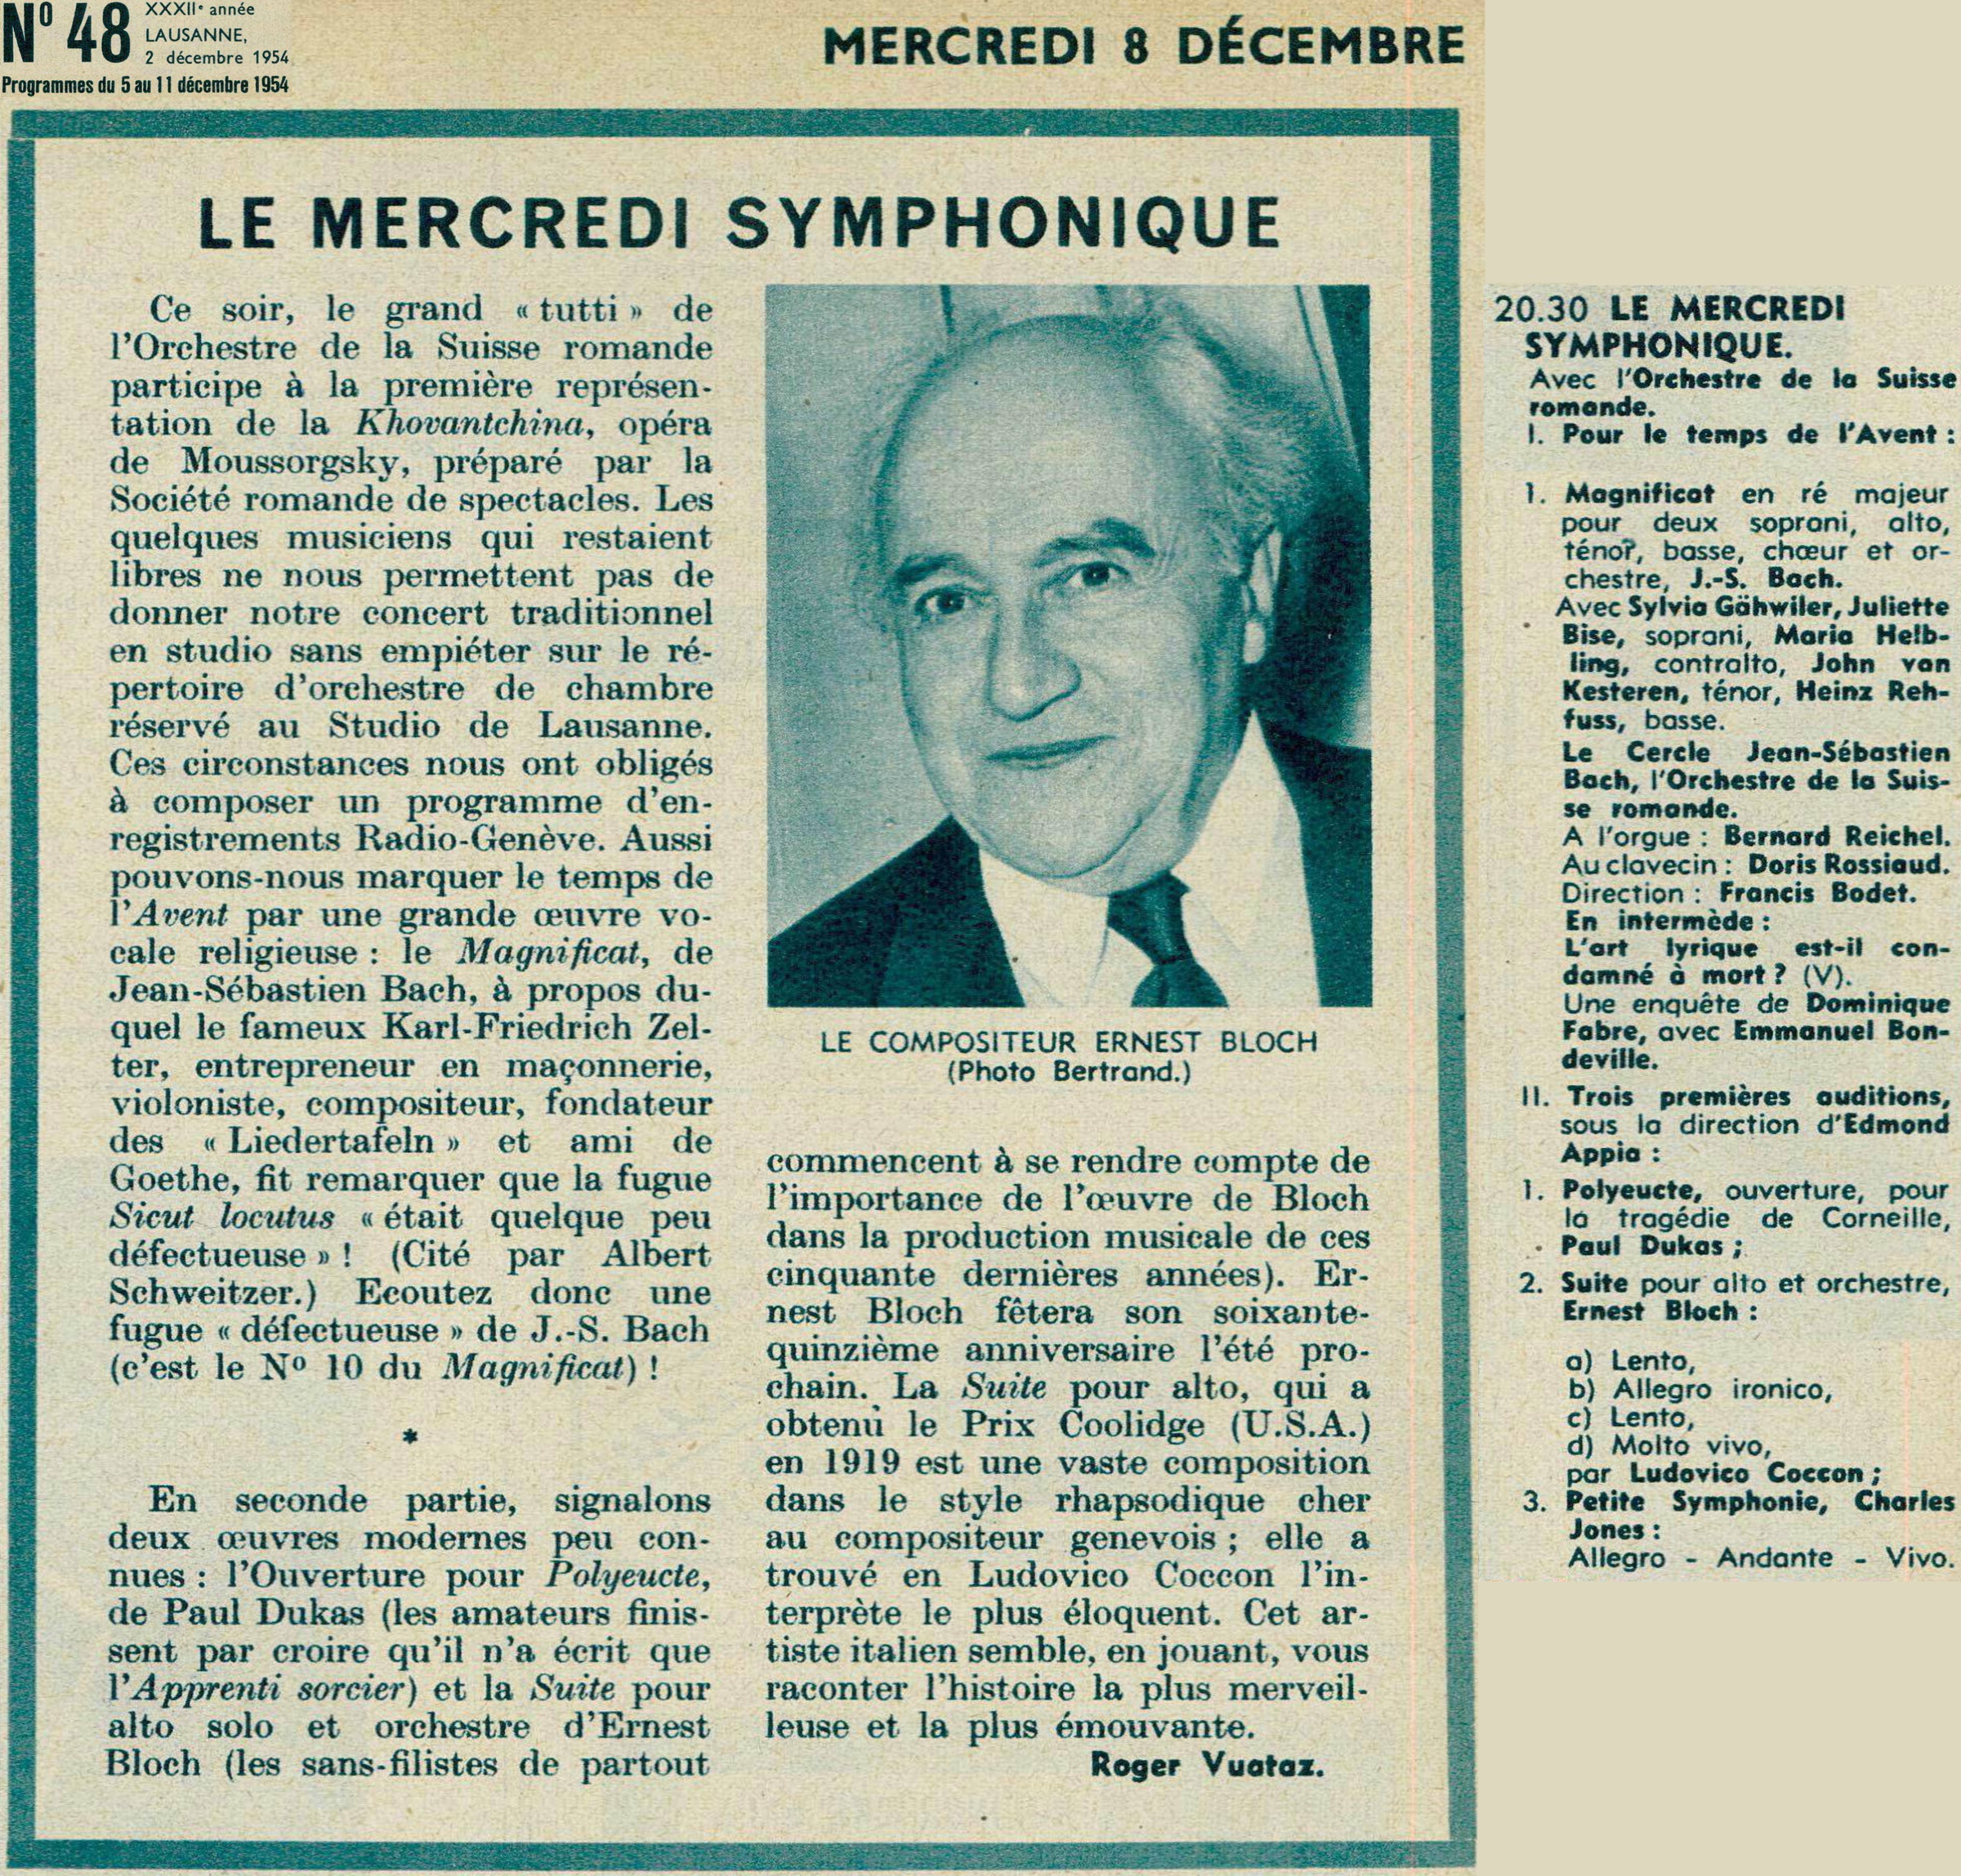 „Le Mercredi Symphonique“ du 8 décembre 1954, montage d'extraits de la revue „RADIO Je vois tout“ du 2 décembre 1954